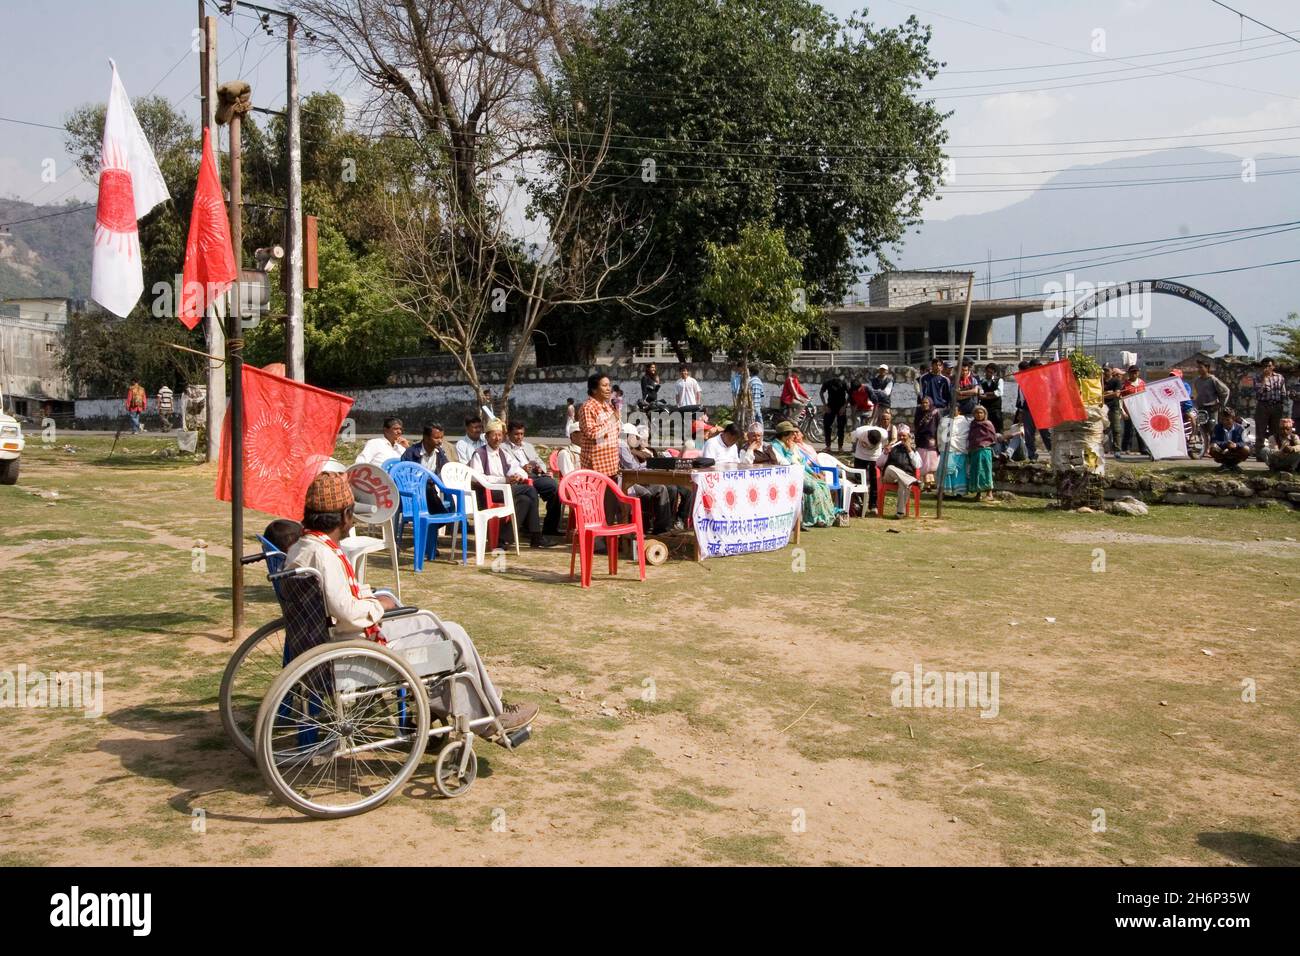 Un incontro di massa del Partito Comunista del Nepal (marxista unificato - leninista) a Batule Chaur, in preparazione delle elezioni dell'Assemblea costituente in Nepal. Pokhara, Nepal. Marzo 29, 2008. Foto Stock